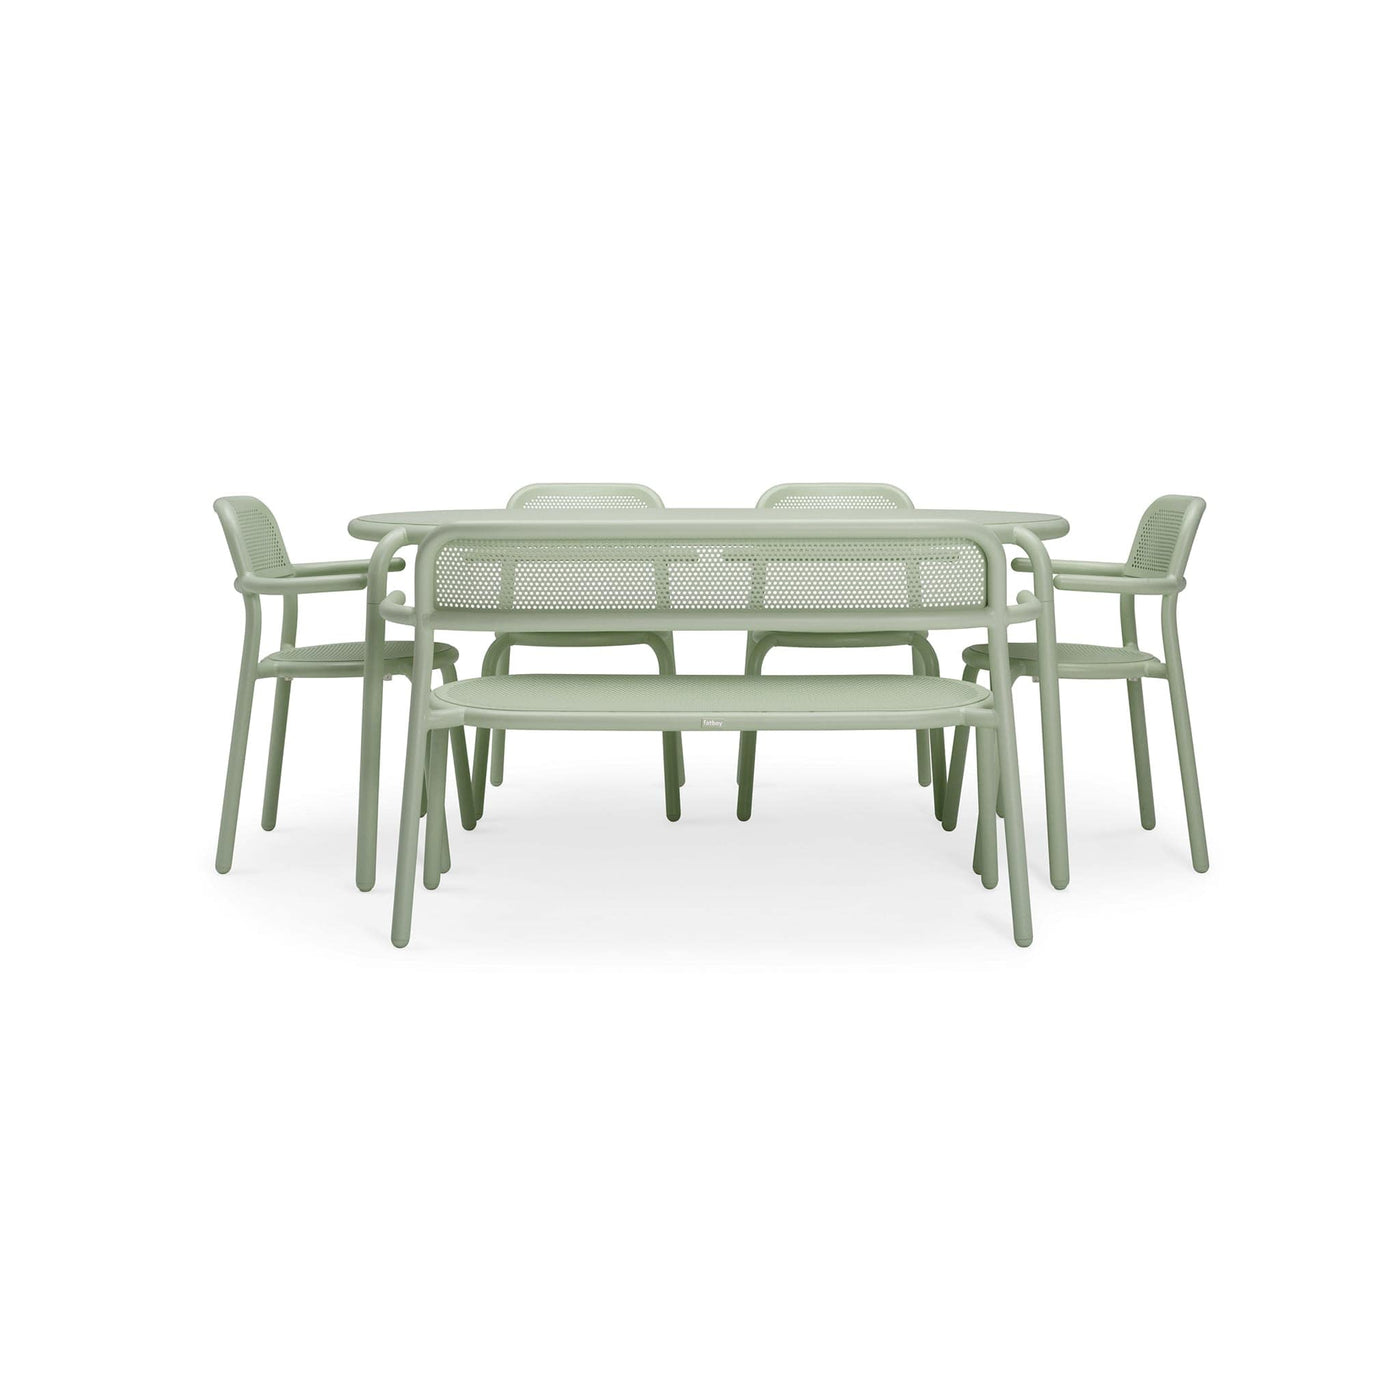 Toní Tavolo de Fatboy : convivialité et longévité : Cette table d'extérieur pour six personnes est parfaite pour des repas, des verres et des jeux. Aluminium léger et revêtement de protection.